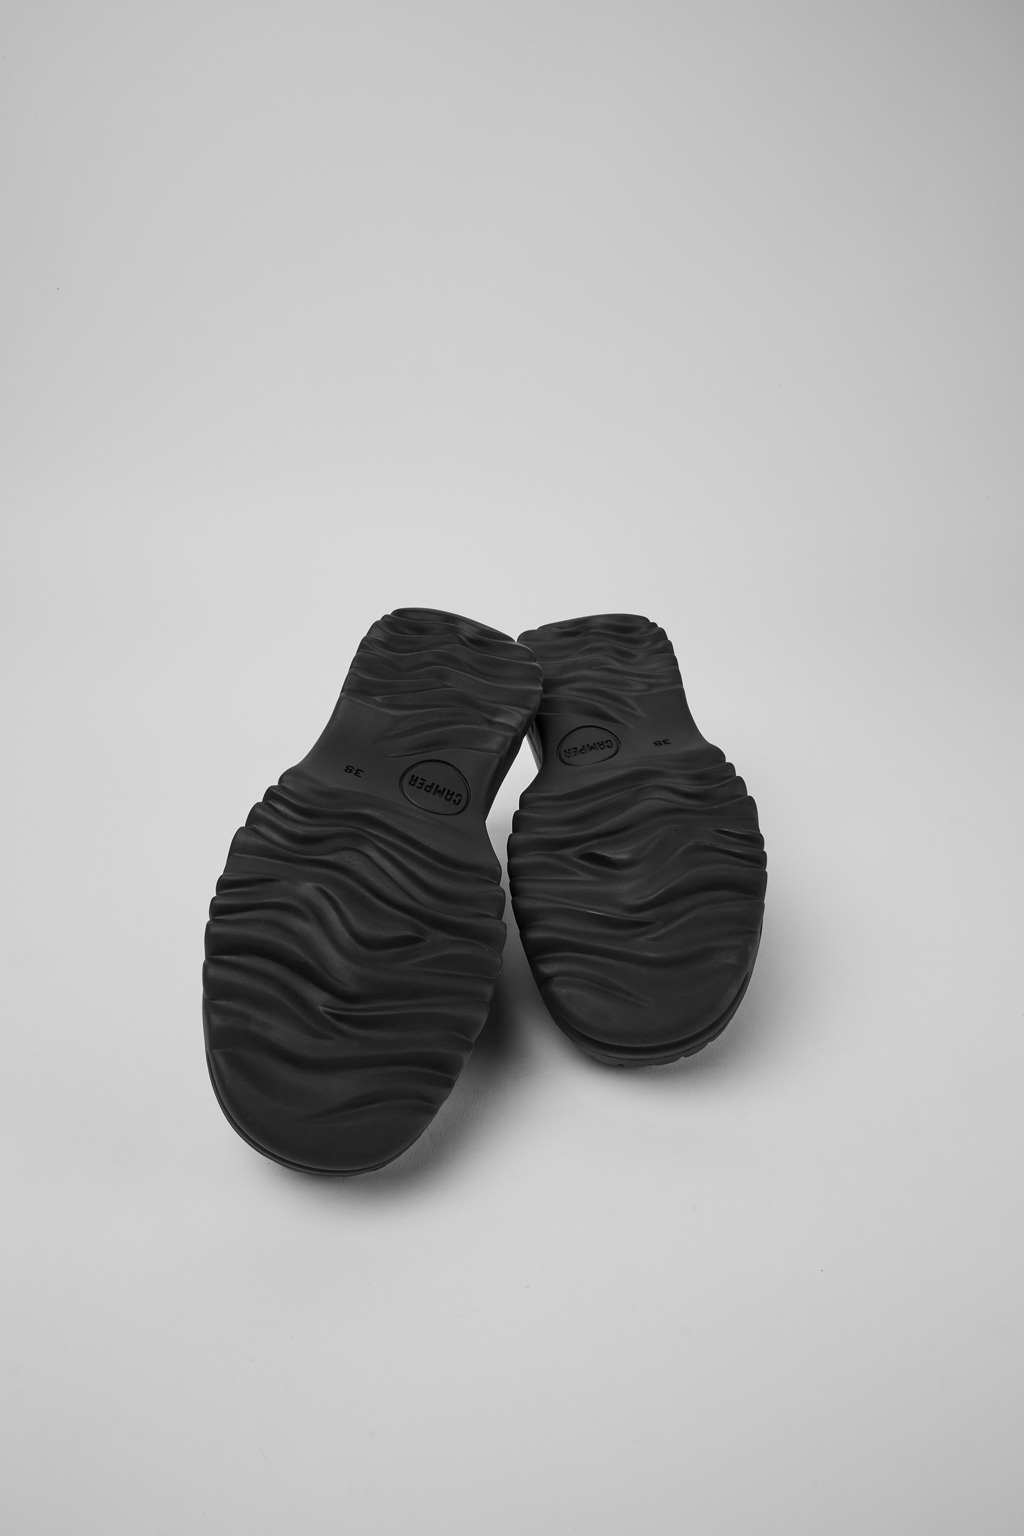 Camper Teix K201306-001 休閒鞋履女鞋. 官方線上商店Taiwan